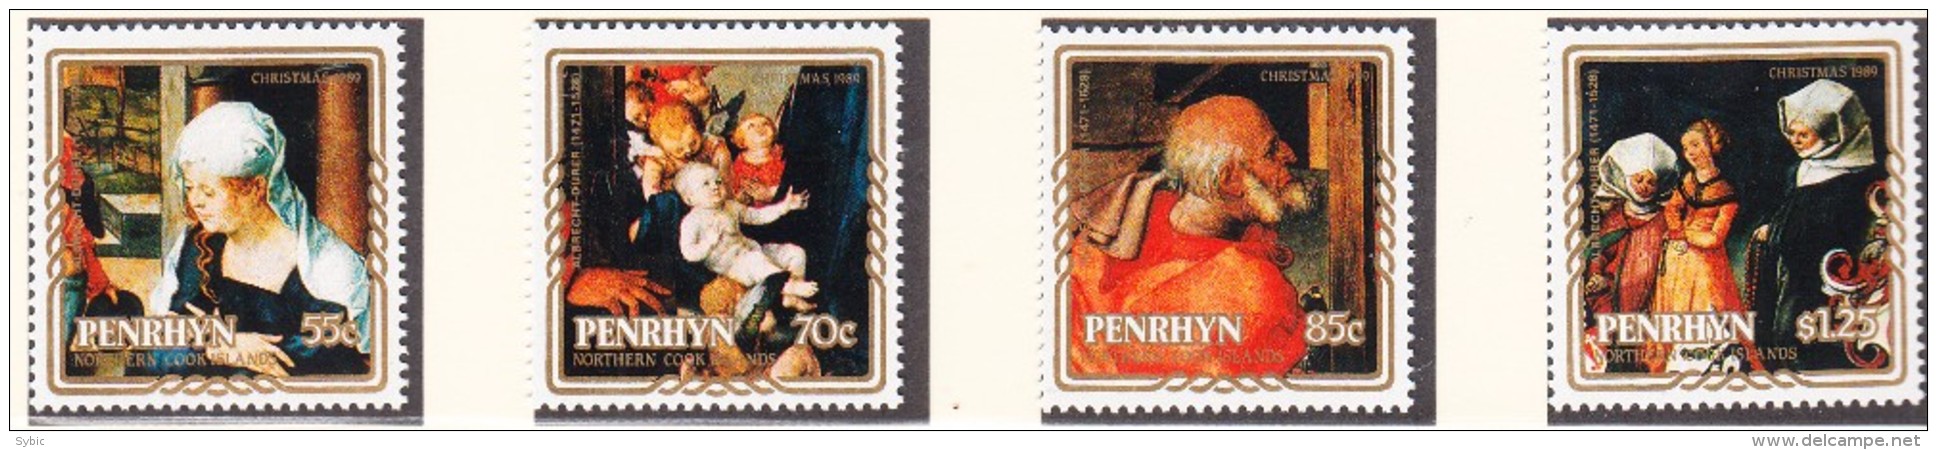 PENRHYN - 1989 - Noël -   Yvert 358/361 + BF 81 -  Neufs ** - Penrhyn